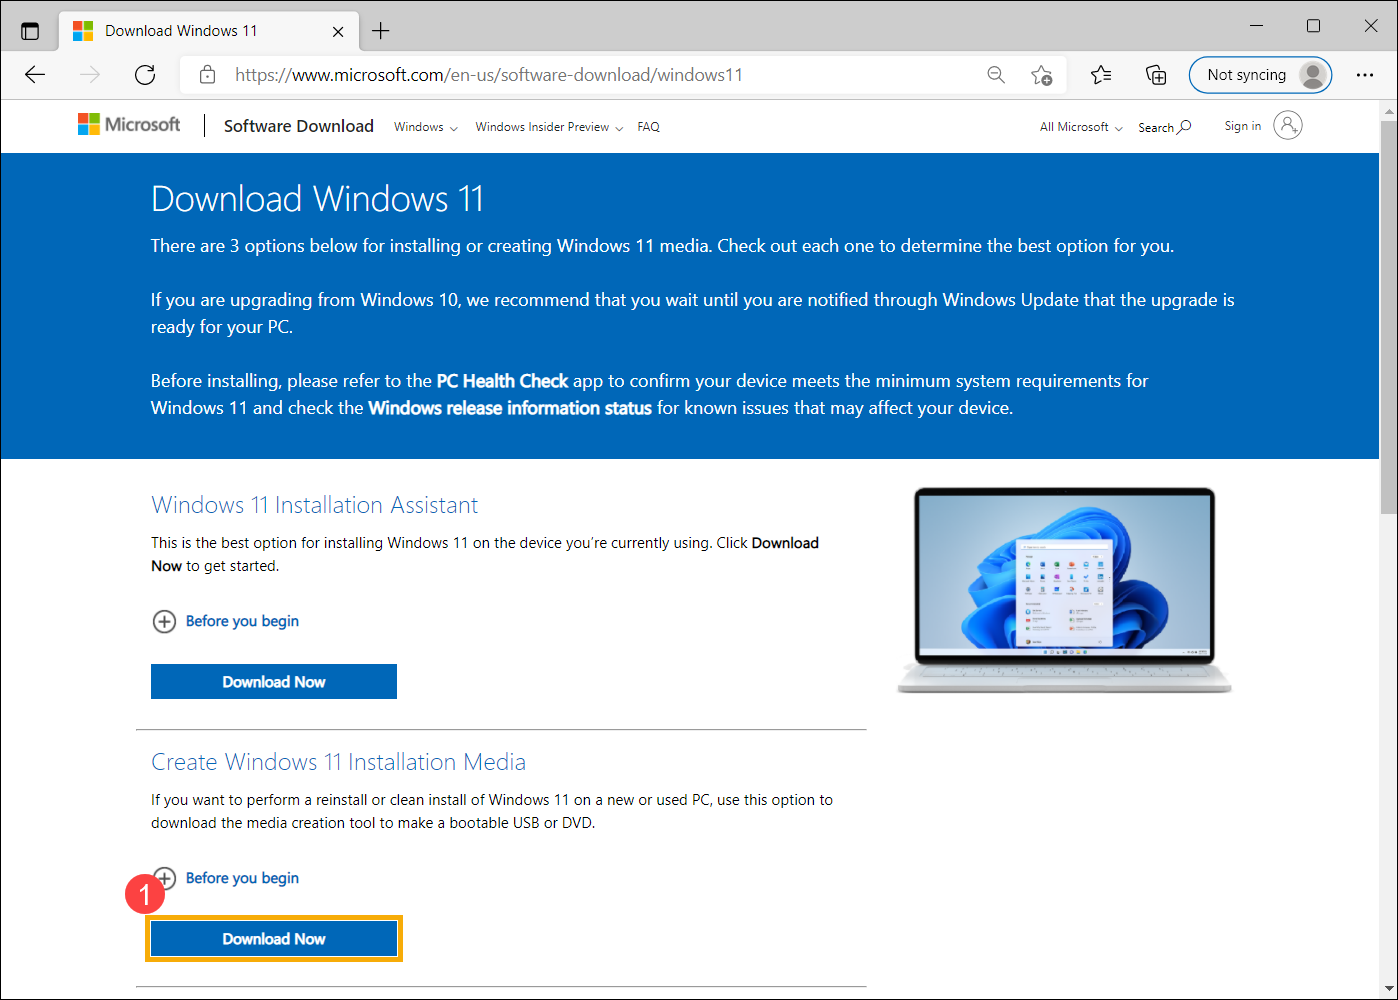 Como instalar o Windows 11 com pendrive? Aprenda como fazer!